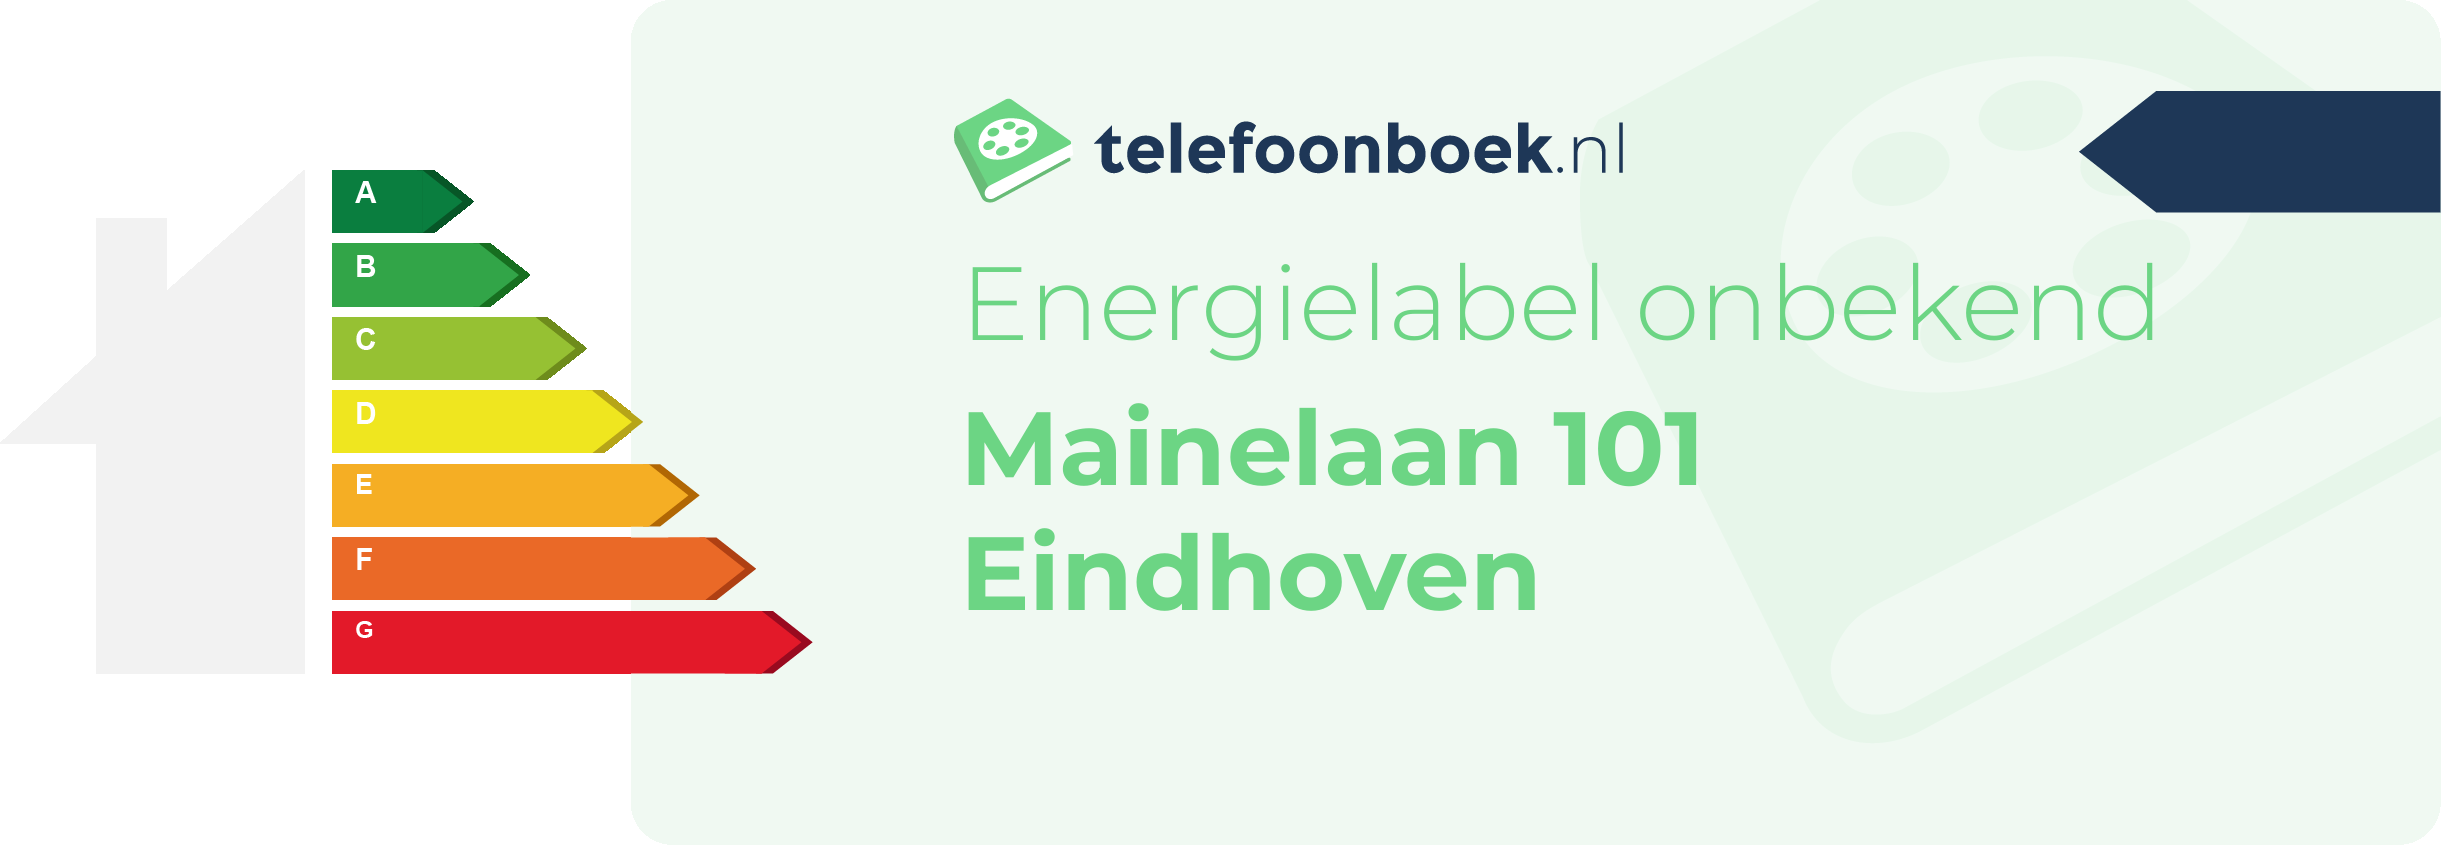 Energielabel Mainelaan 101 Eindhoven